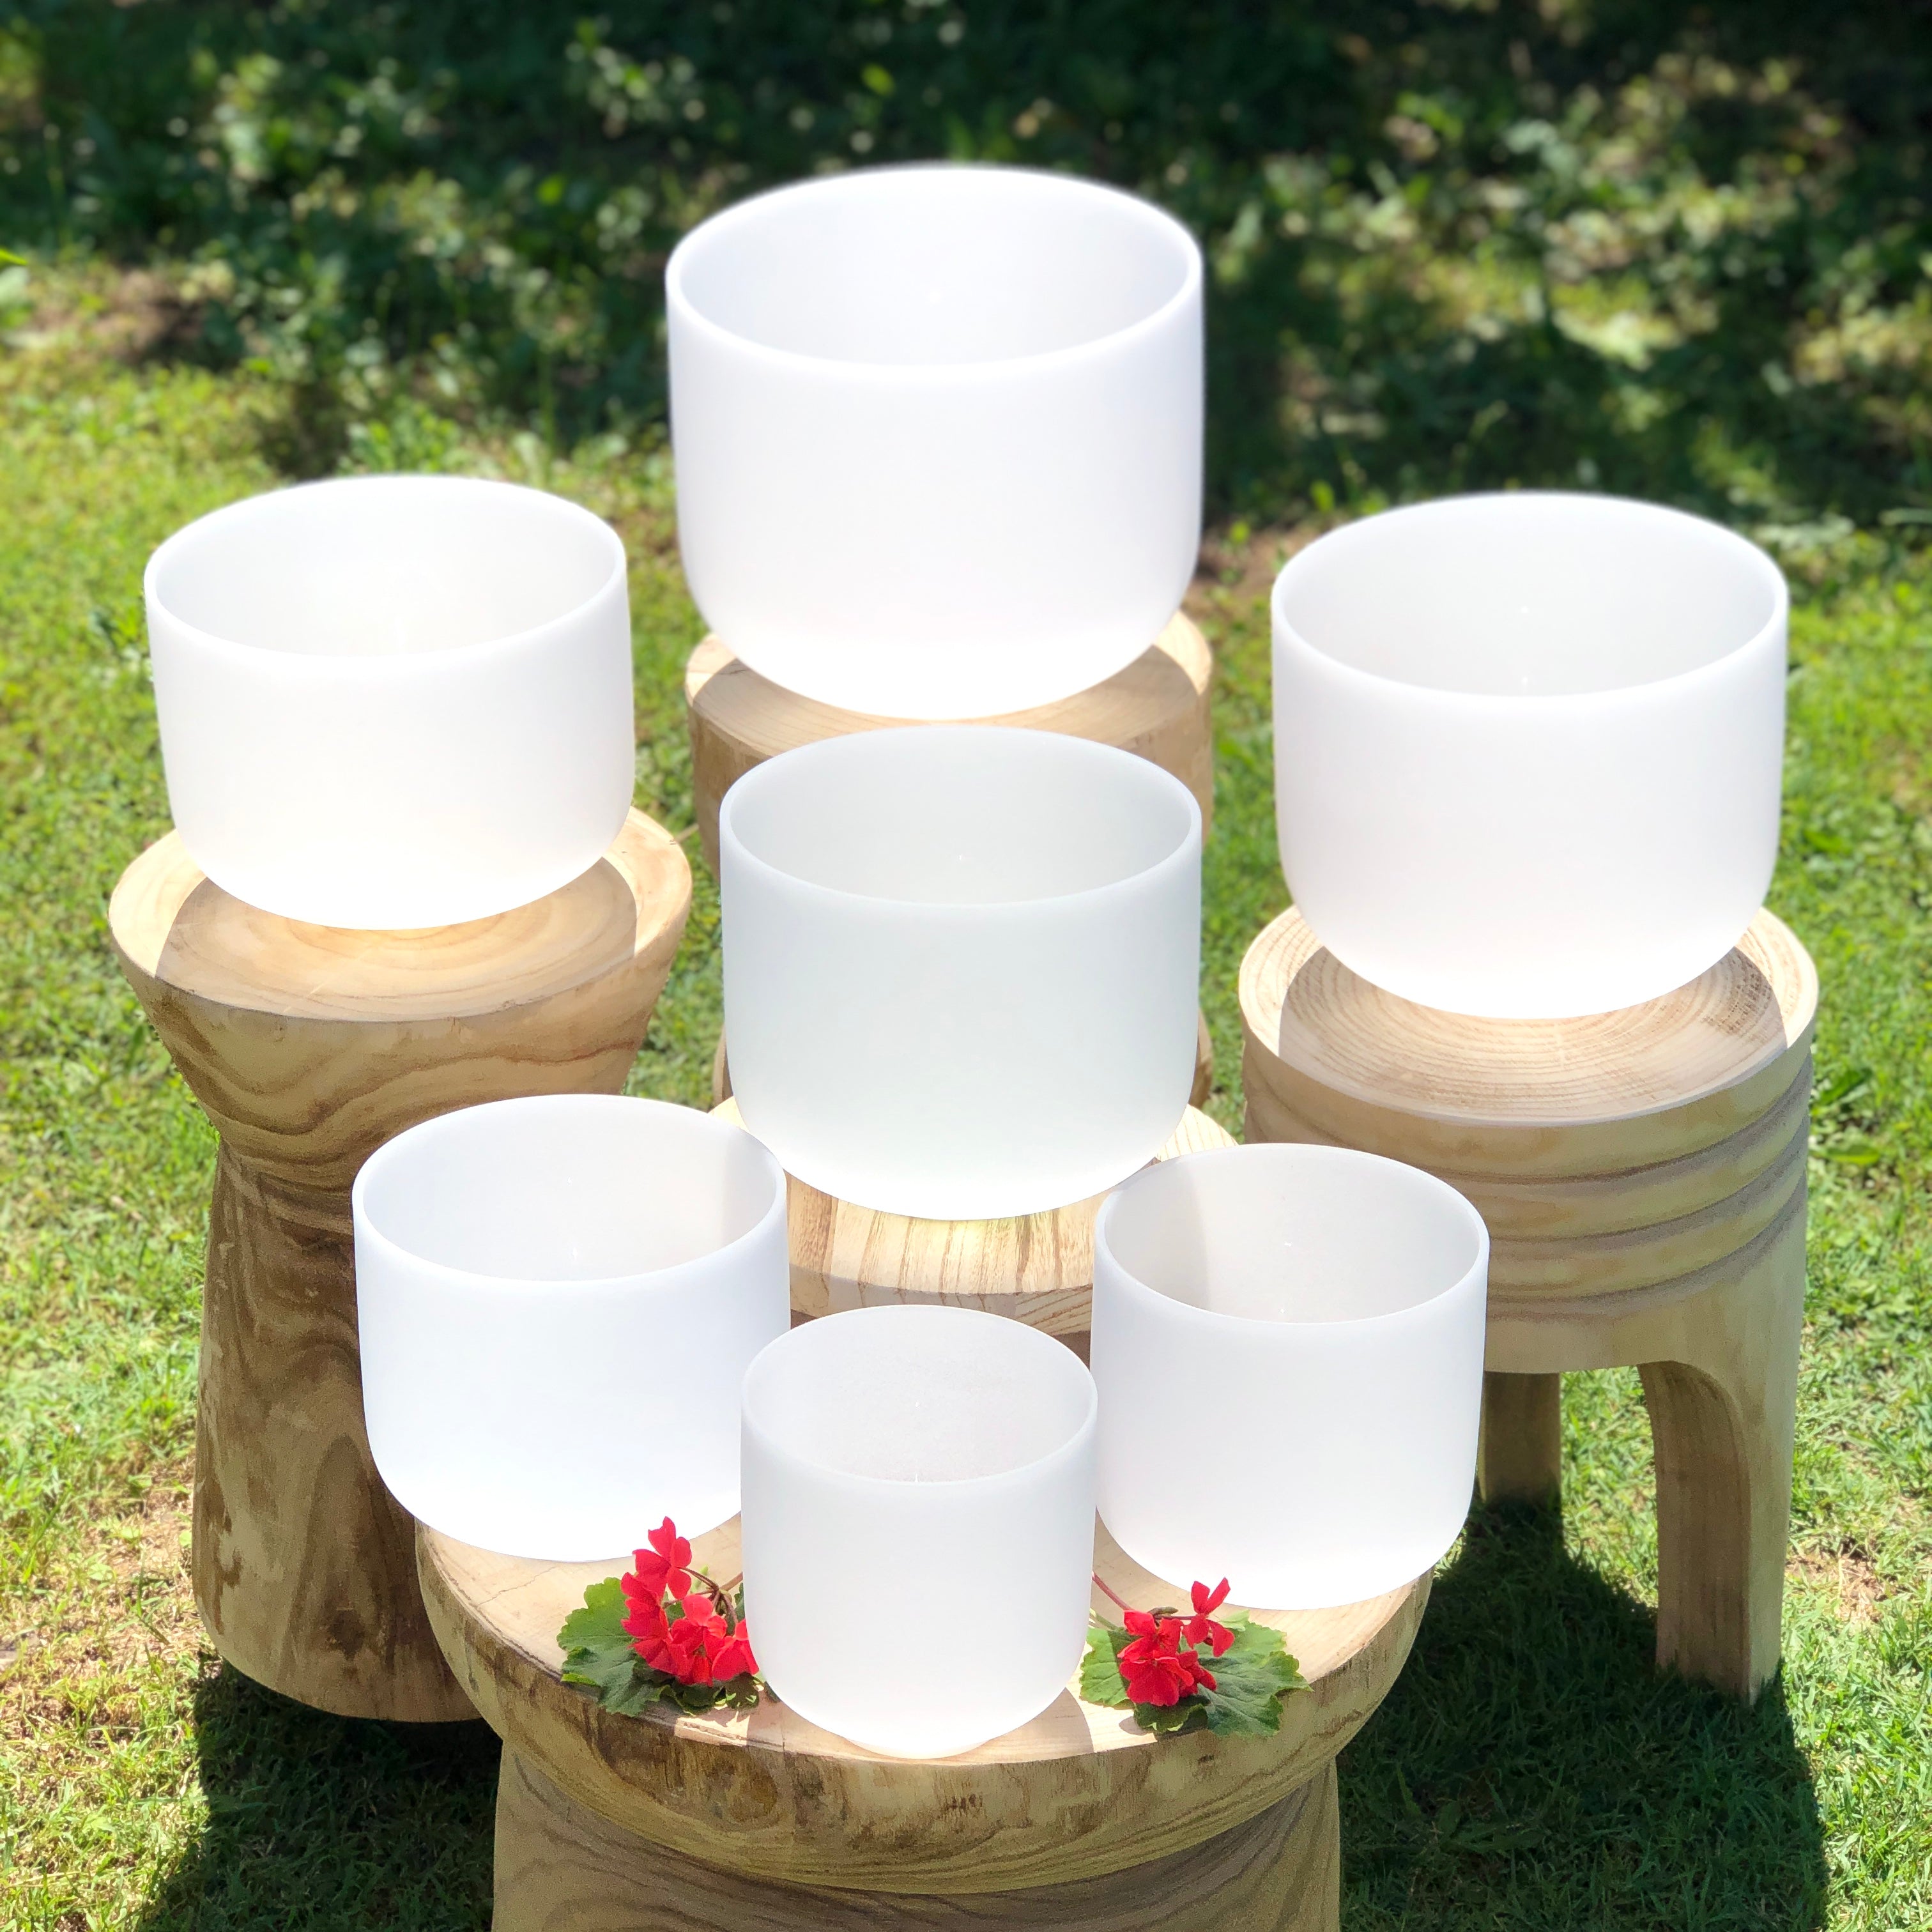 Set of 7 White Crystal Singing Bowls